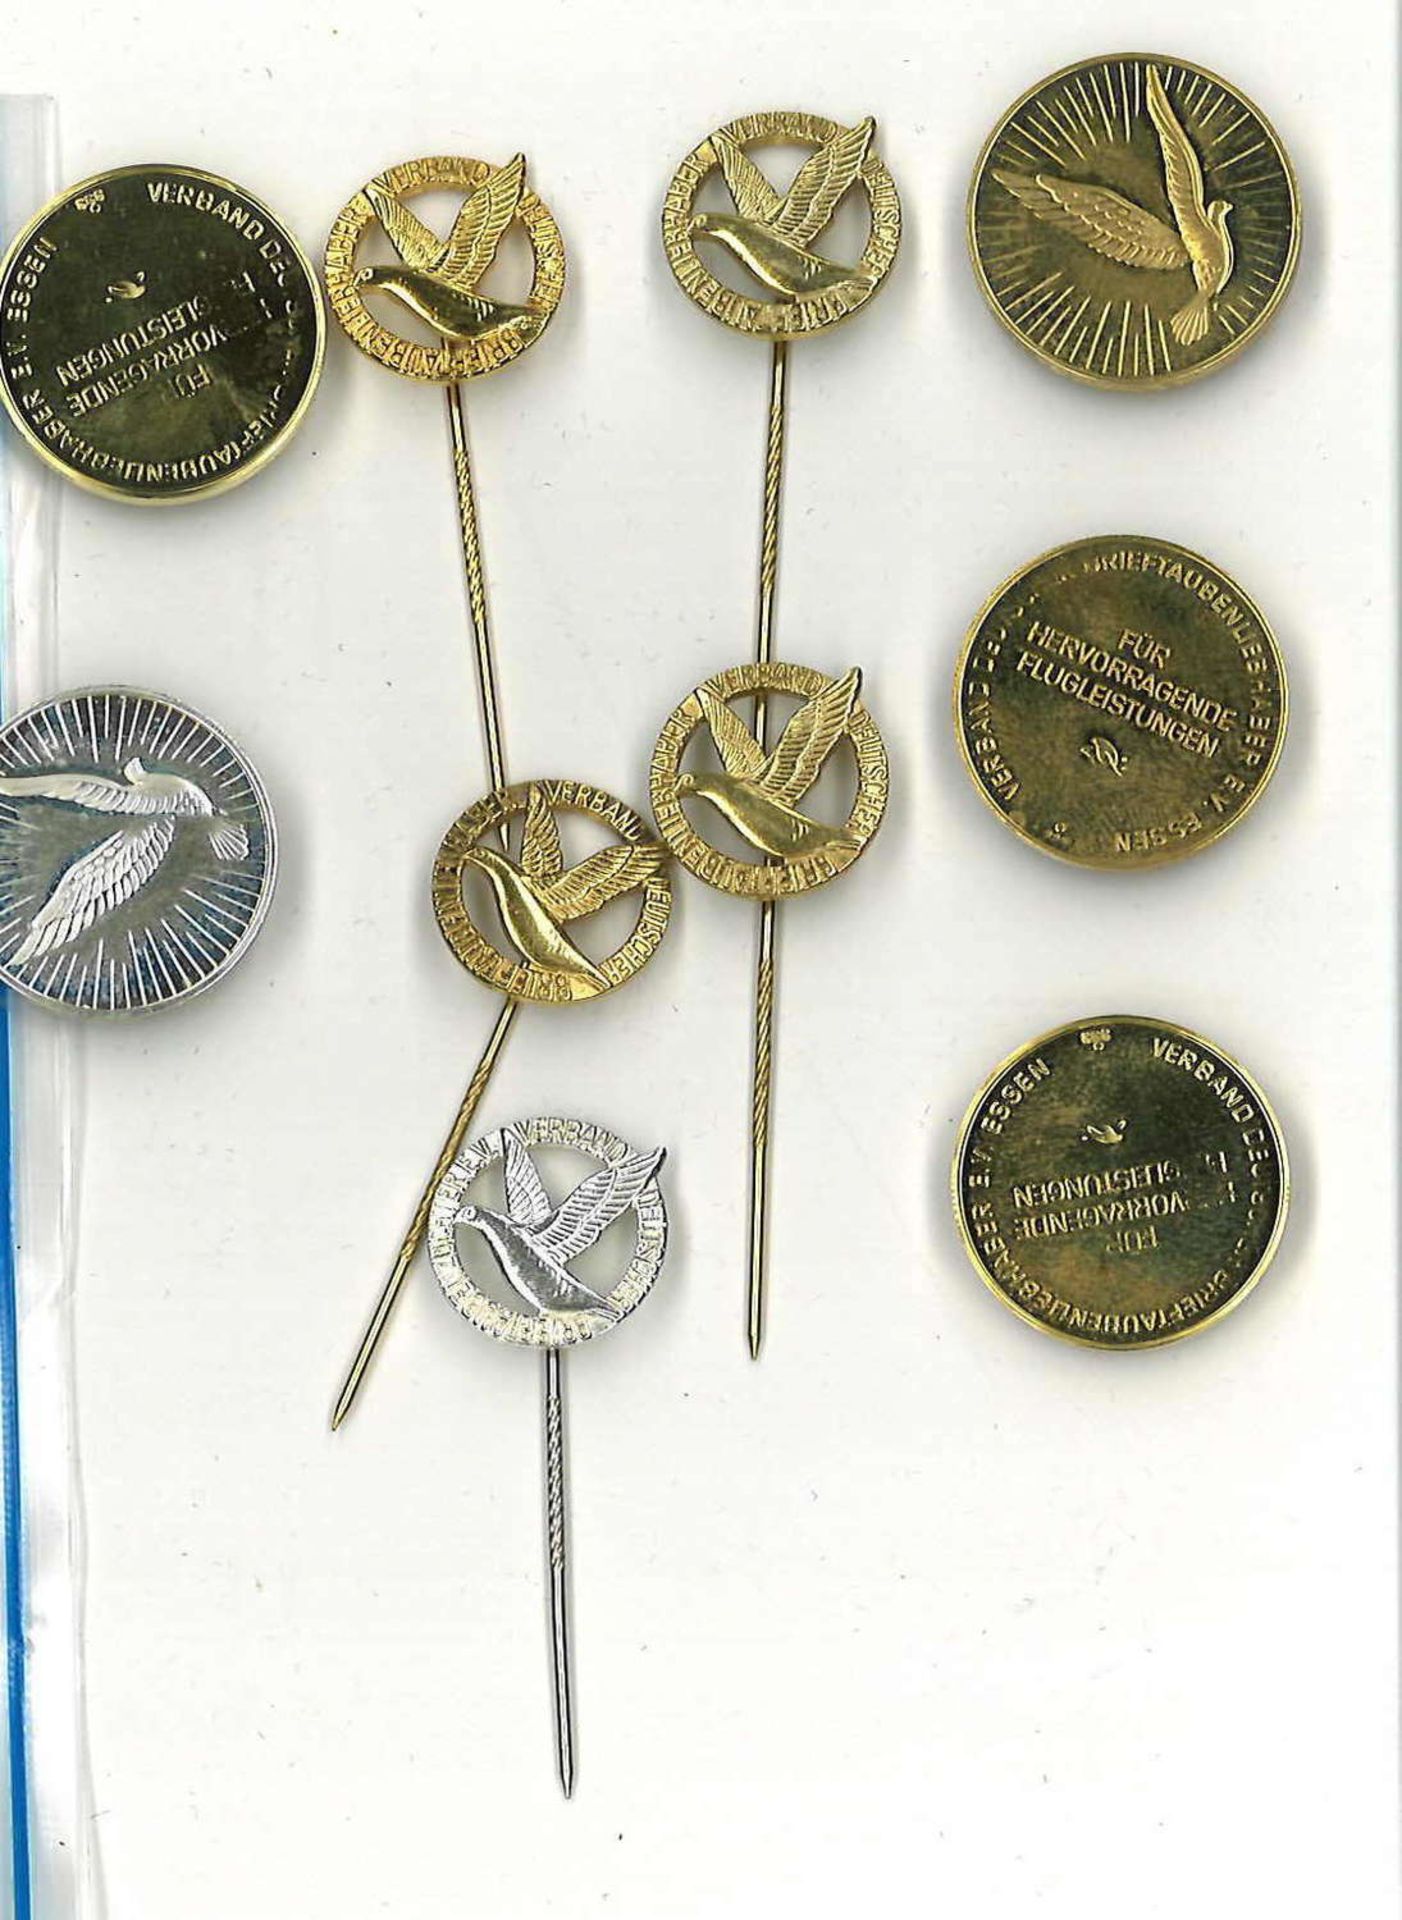 Lot Medaillen, Brieftaubenliebhaber, Goldmünzen 333er, Rest Silber, teilweise vergoldet.Gewicht